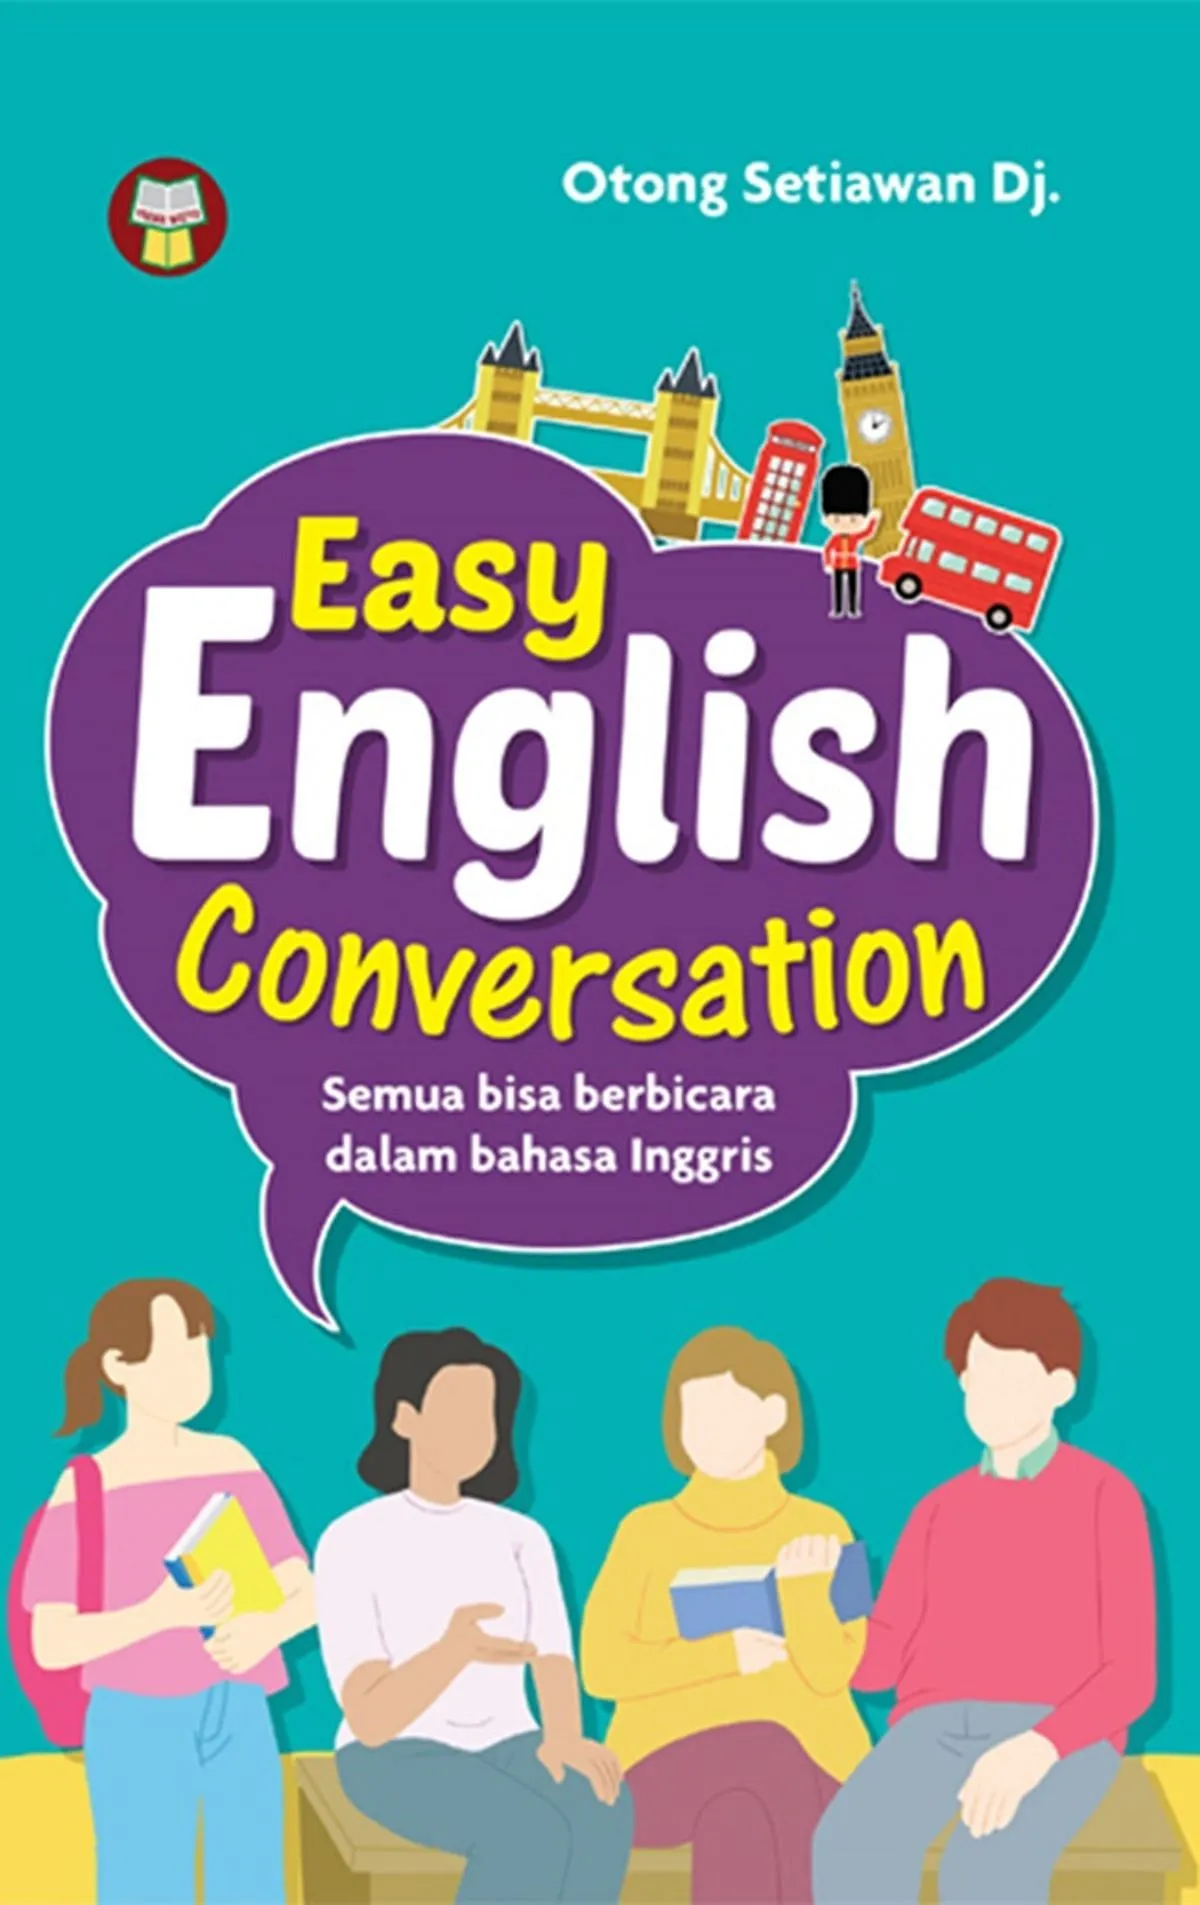 Manfaatkan Program Tandem Language Exchange untuk Belajar Bahasa Inggris